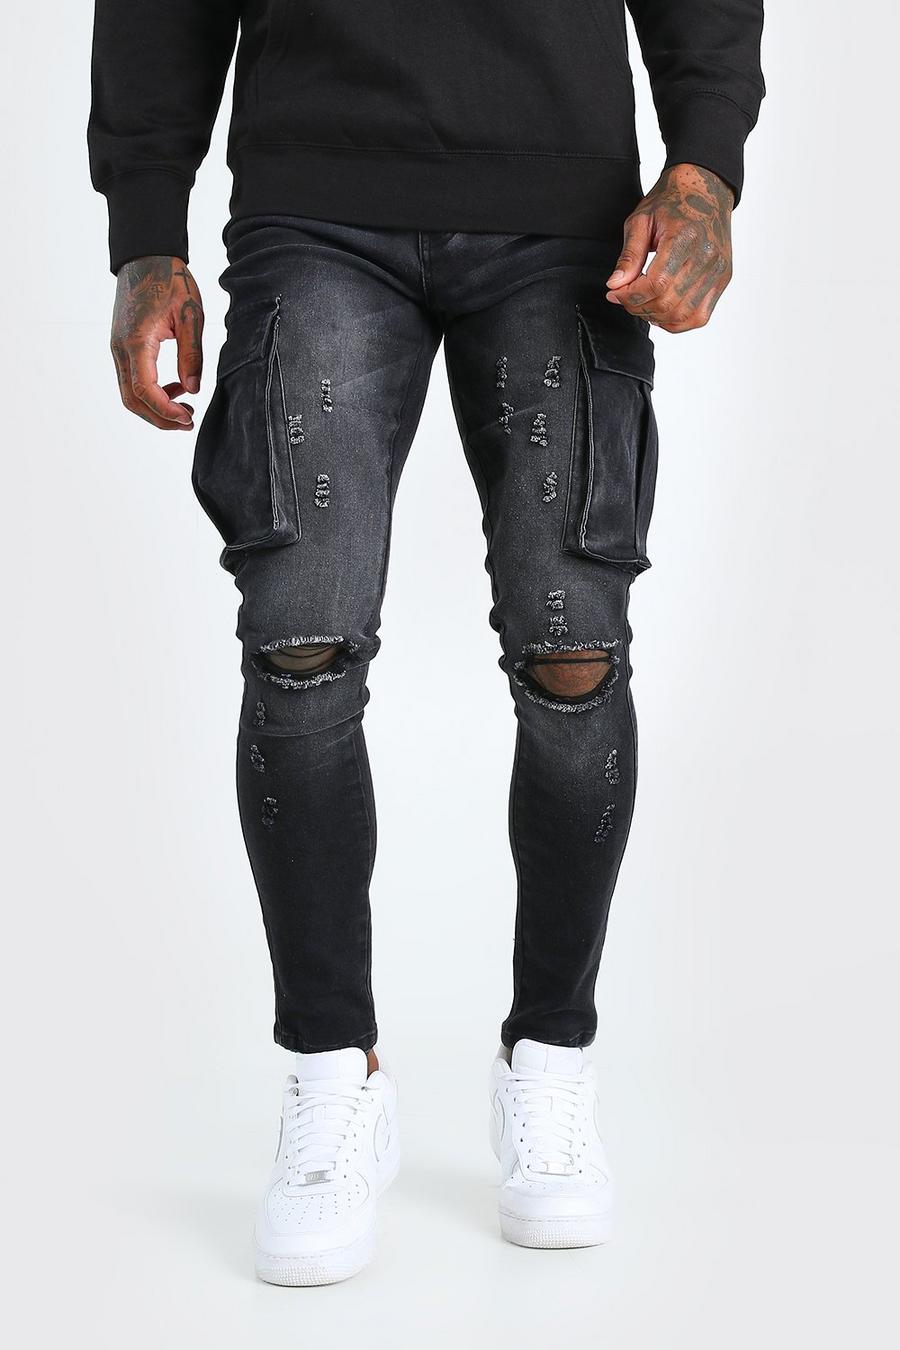 שחור דהוי סופר סקיני ג'ינס עם קרעים בברכיים בסגנון דגמ'ח